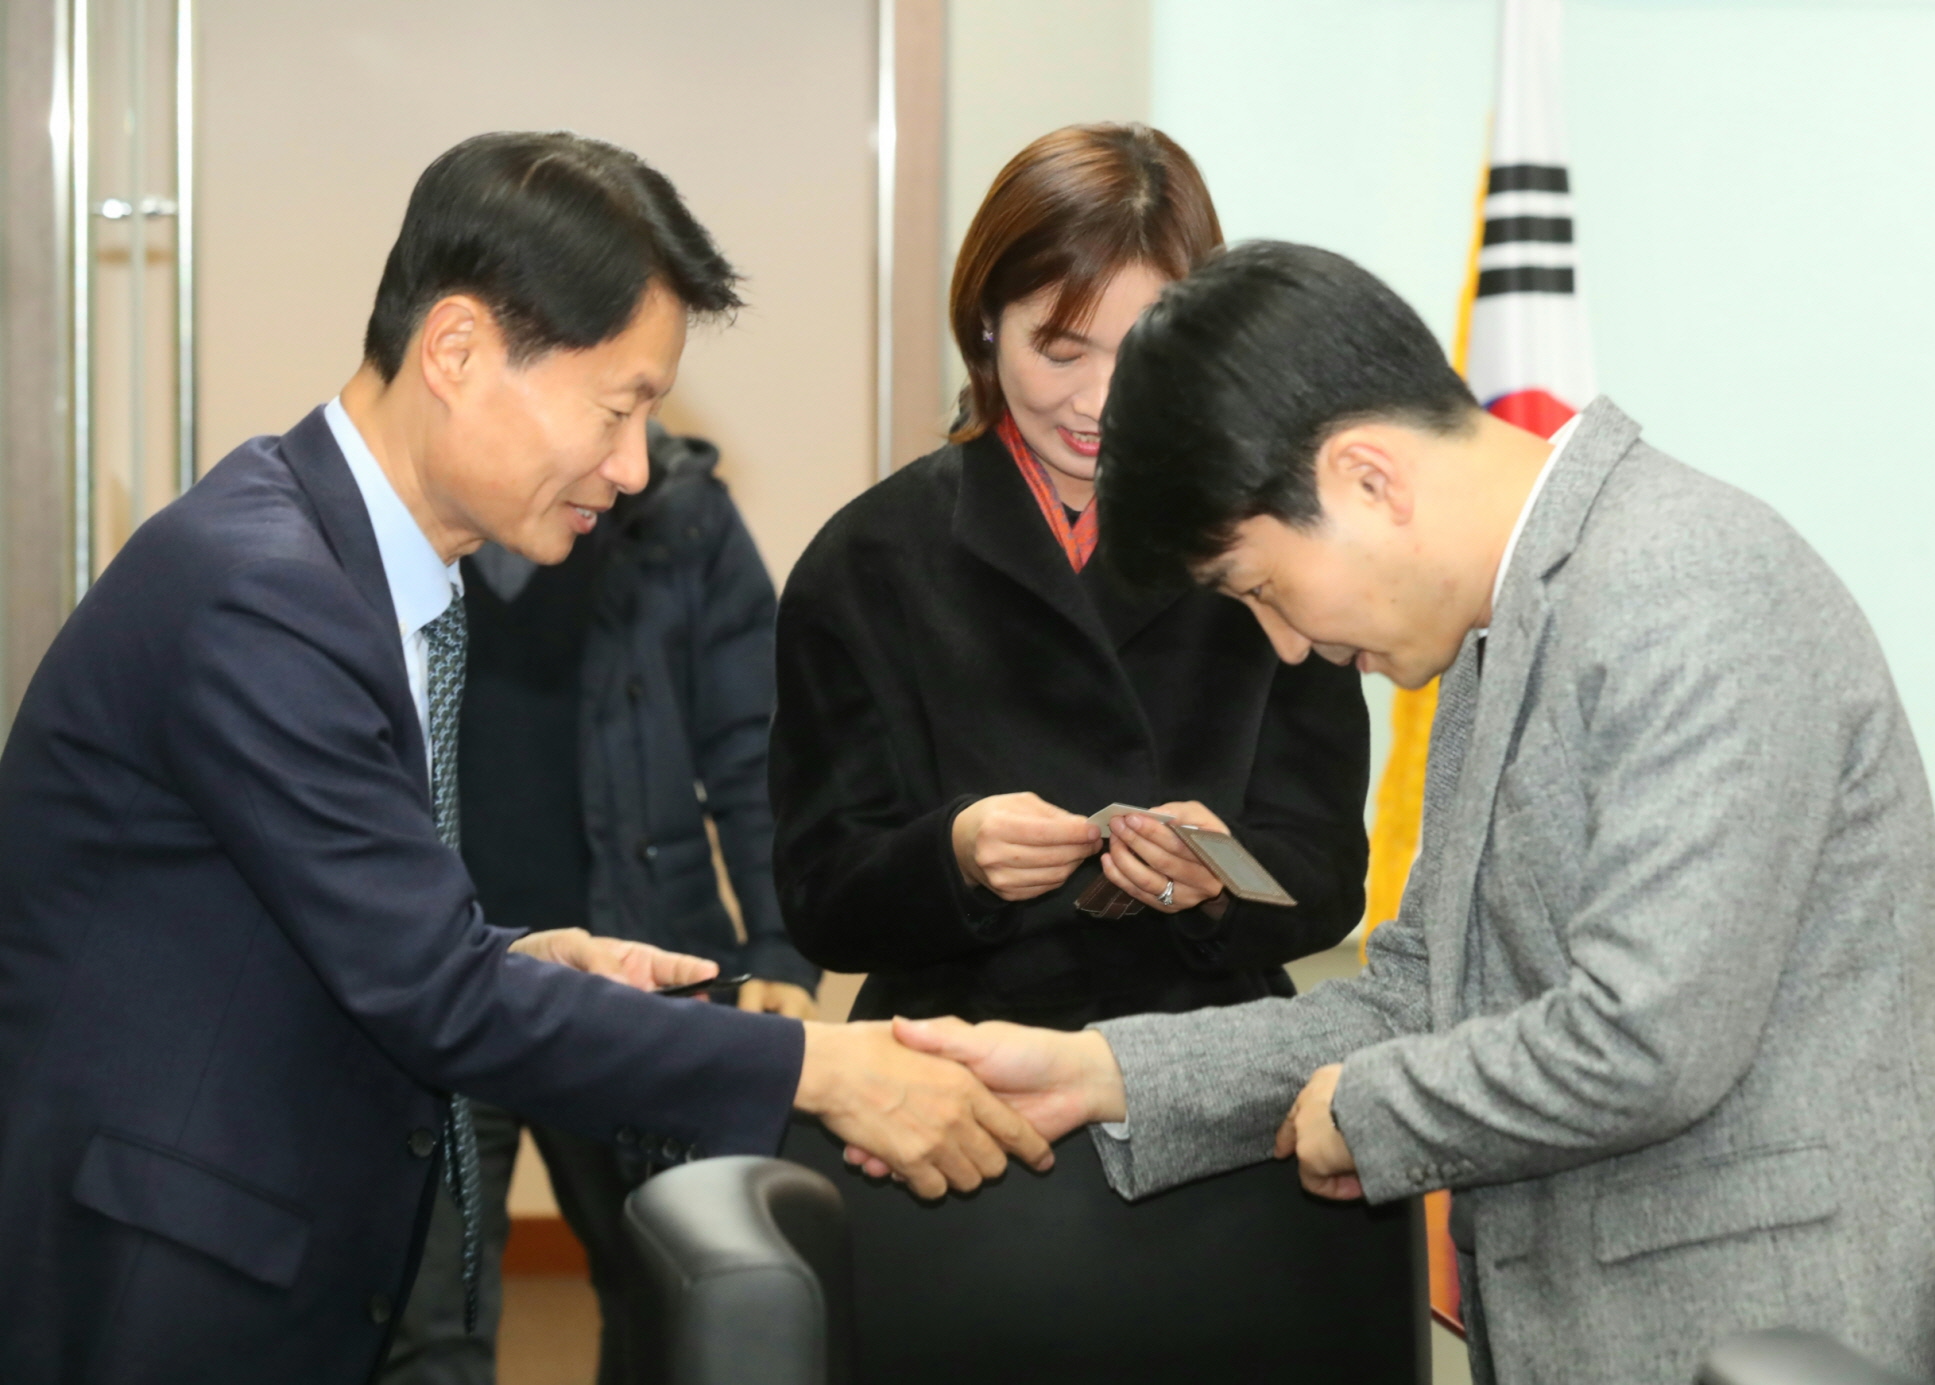 「재난적의료비지원 정책심의위원회」제1차 회의 개최 (12.10) 사진2